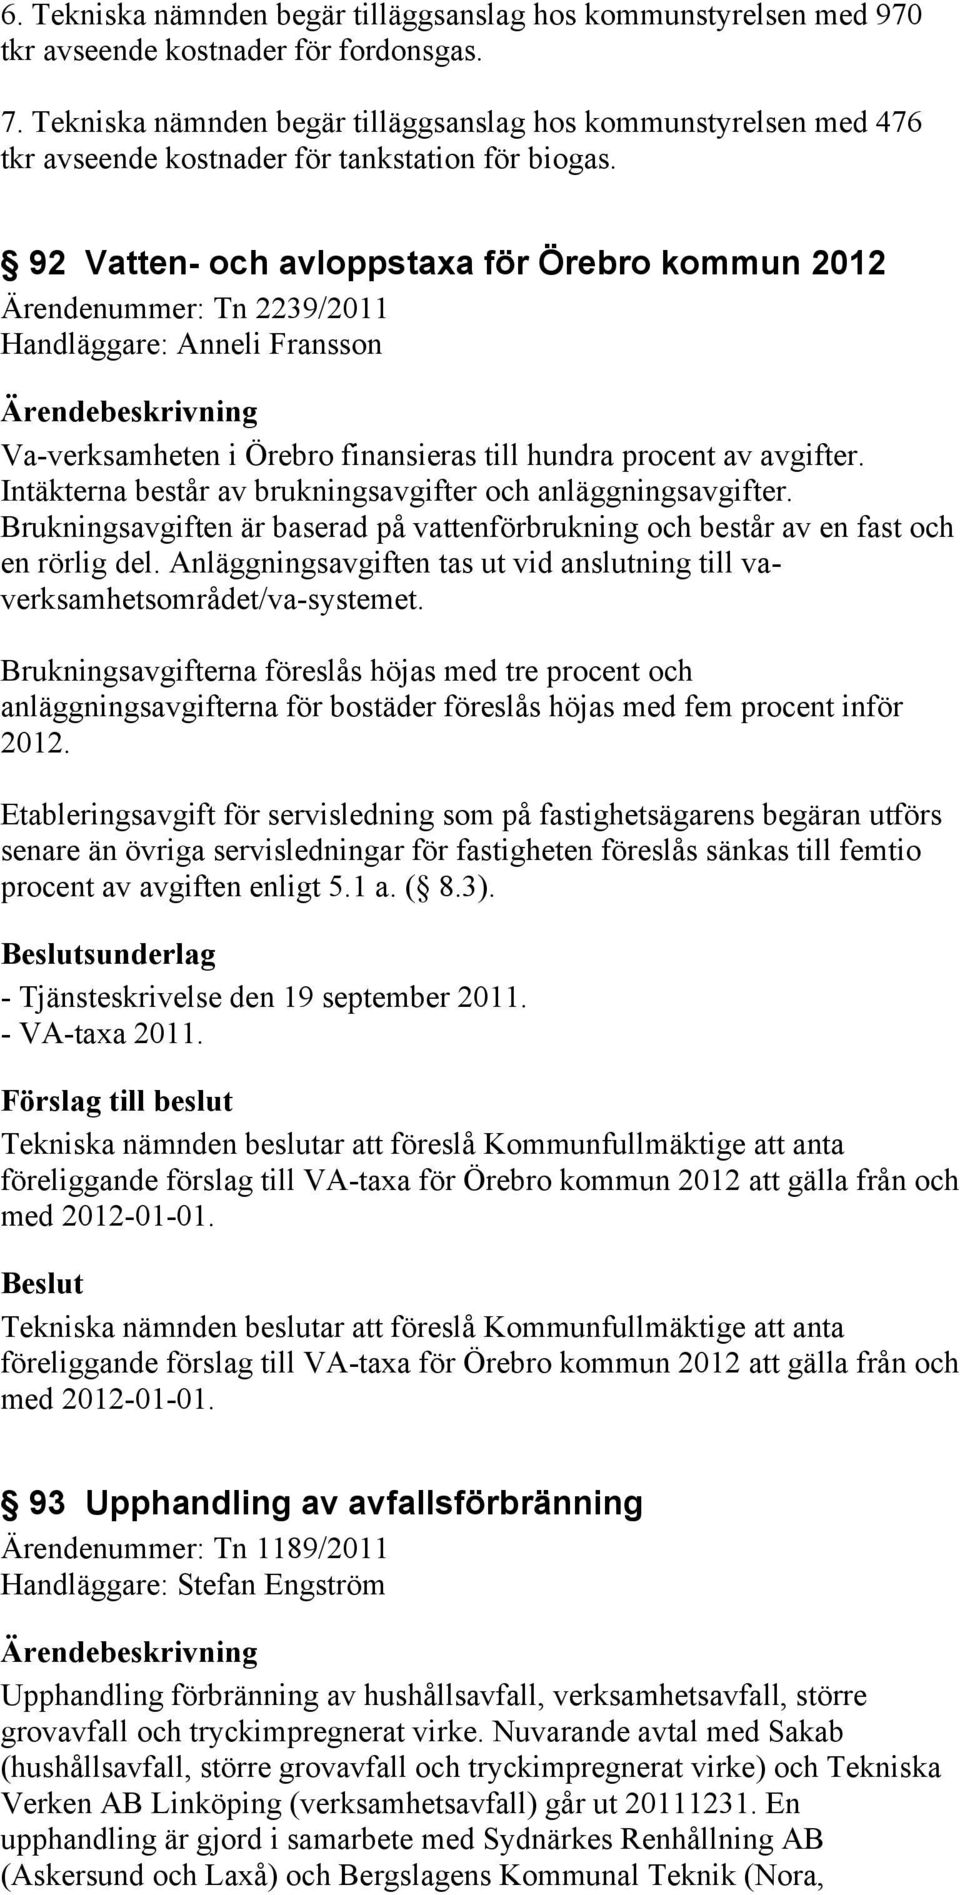 92 Vatten- och avloppstaxa för Örebro kommun 2012 Ärendenummer: Tn 2239/2011 Handläggare: Anneli Fransson Va-verksamheten i Örebro finansieras till hundra procent av avgifter.